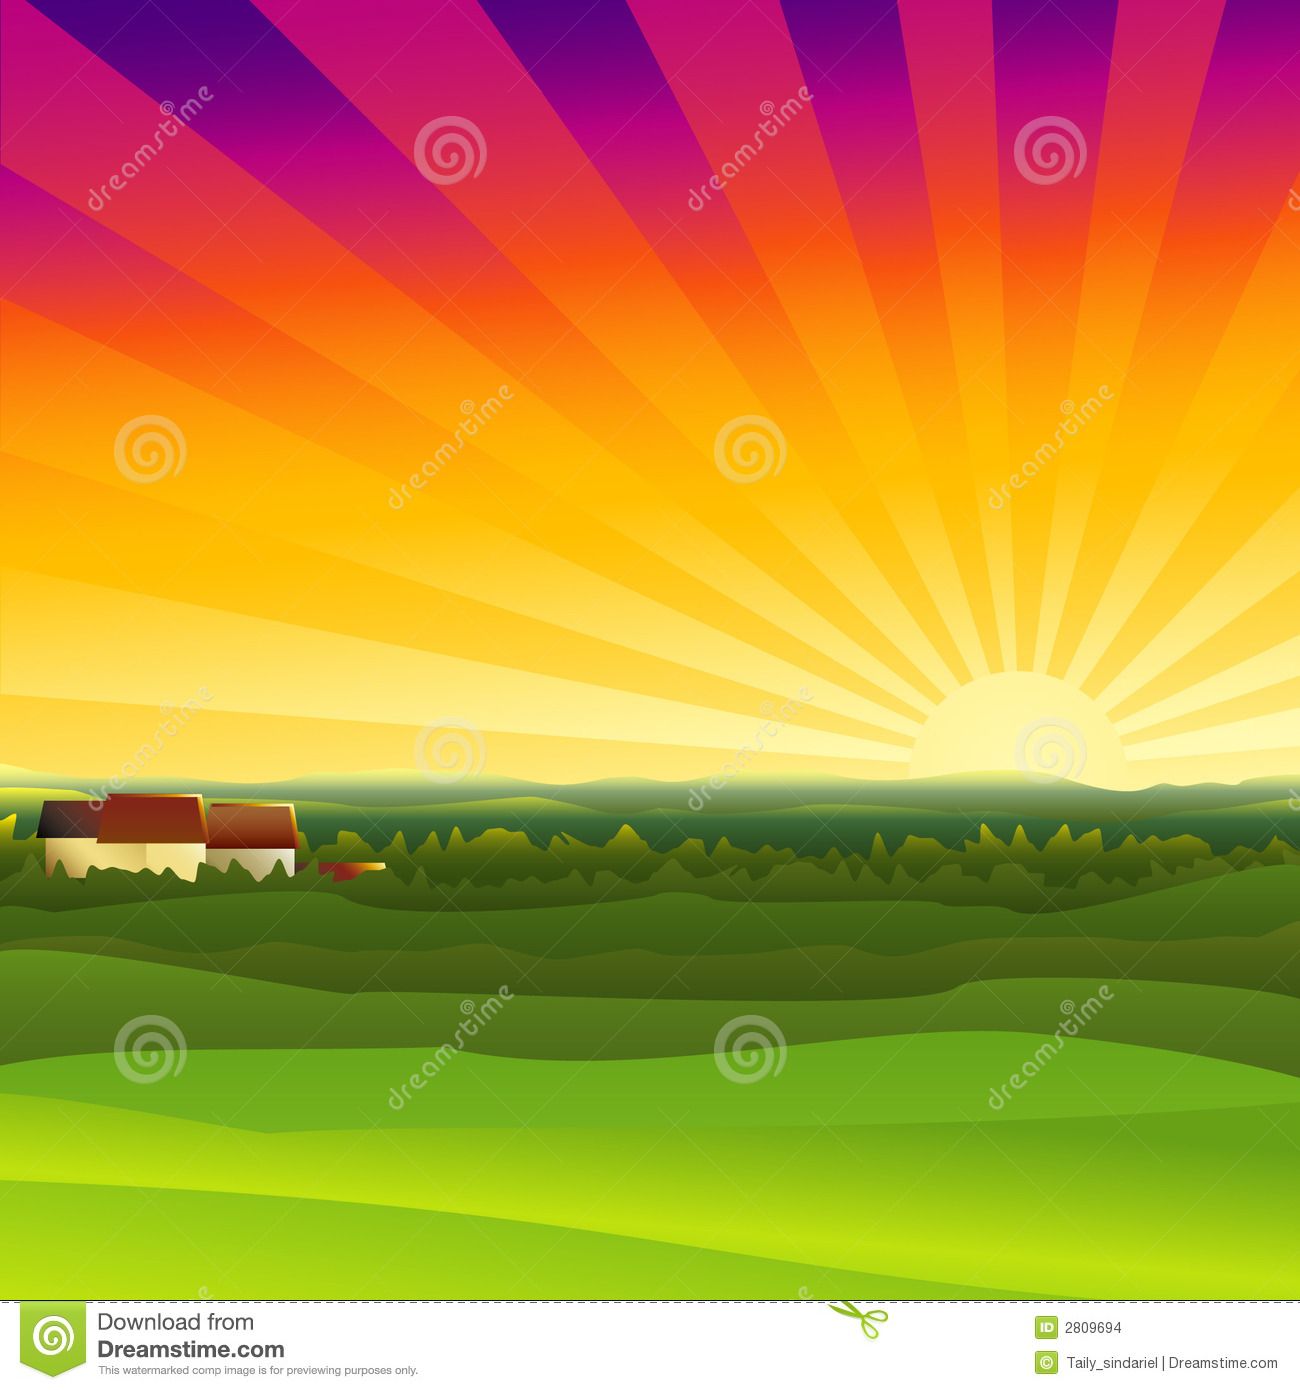 farm clipart sunset